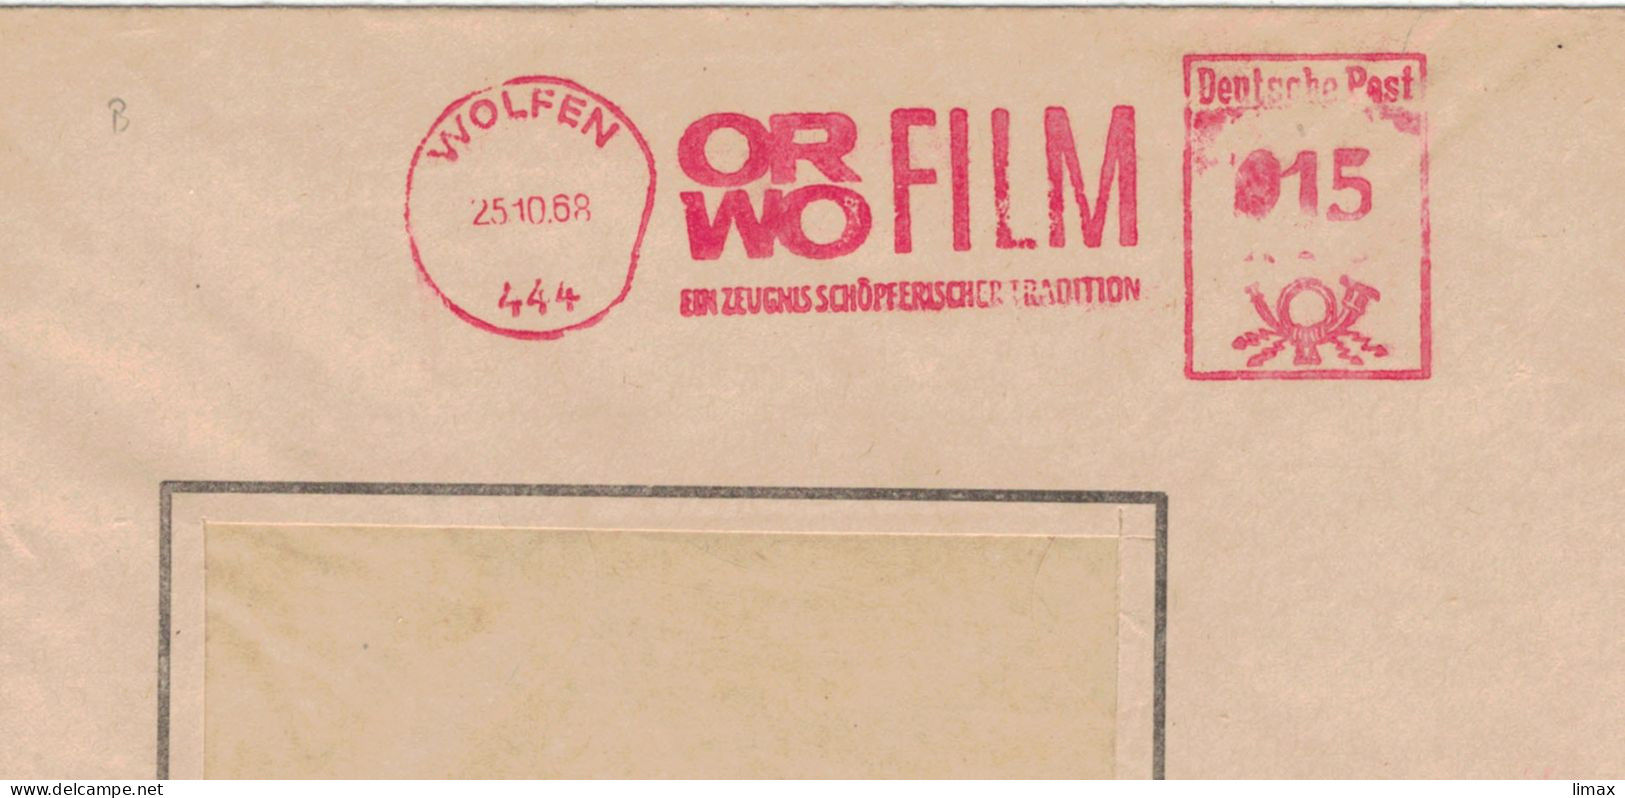 444 Wolfen 1968 Zeugnis Schöpferischer Tradition ORWO Film - Ehem. IG Farben - 1945 Patente An Eastman Kodak - Machines à Affranchir (EMA)